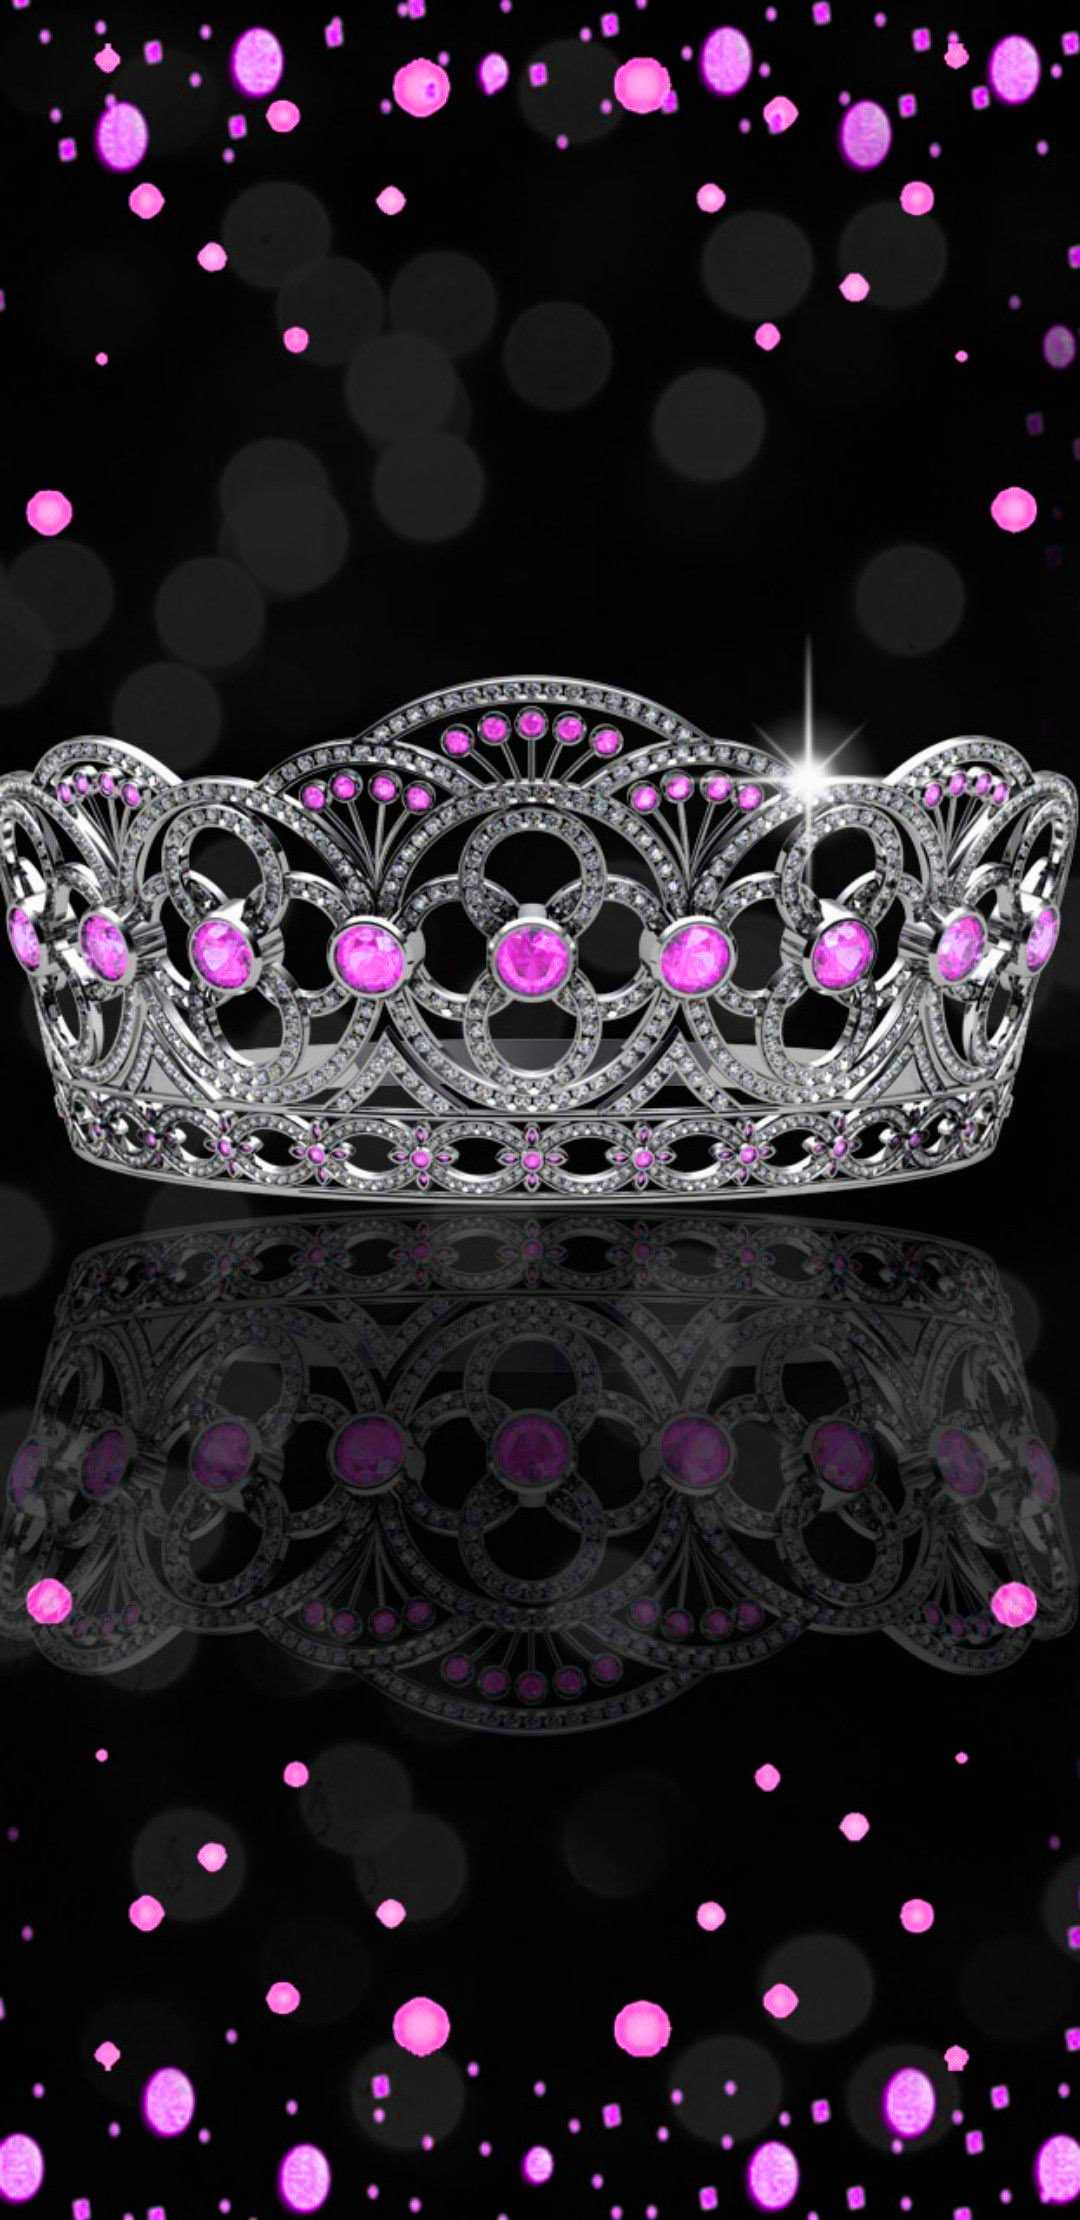 Free download Queen Crown Wallpaper Royal queens crown by msmeemz [900x584]  for your Desktop, Mobile & Tablet | Explore 67+ Crown Royal Wallpaper | Crown  Wallpapers, Royal Blue Backgrounds, Royal Blue Wallpaper